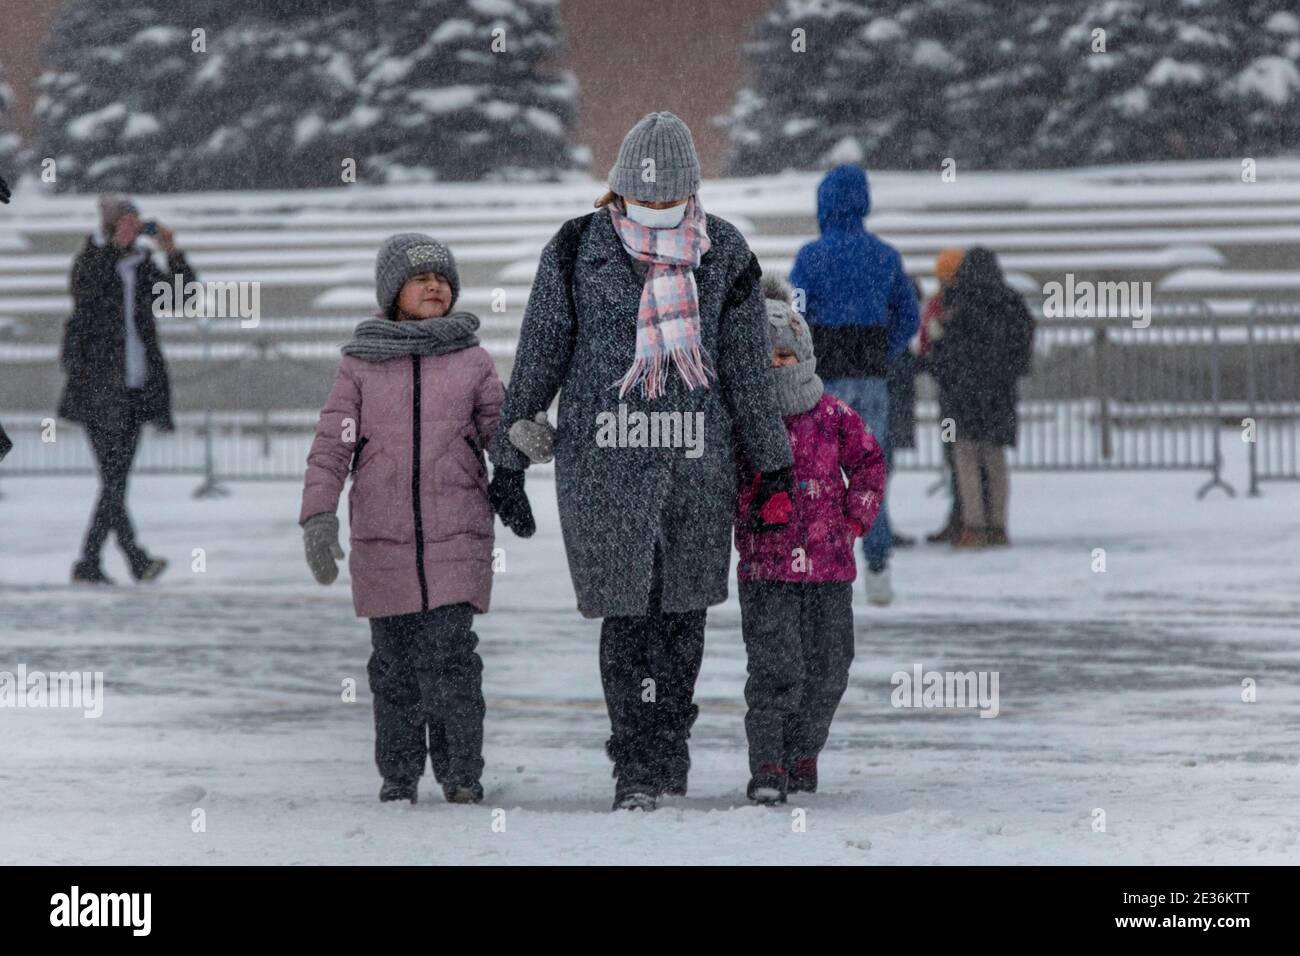 Moscou, Russie. 16 janvier, 2021 personnes dans des masques médicaux marchent le long de la place Rouge dans le centre-ville de Moscou pendant une chute de neige anormale et le temps froid, la Russie. La température de l'air a chuté à -15 degrés (5 °F) Banque D'Images